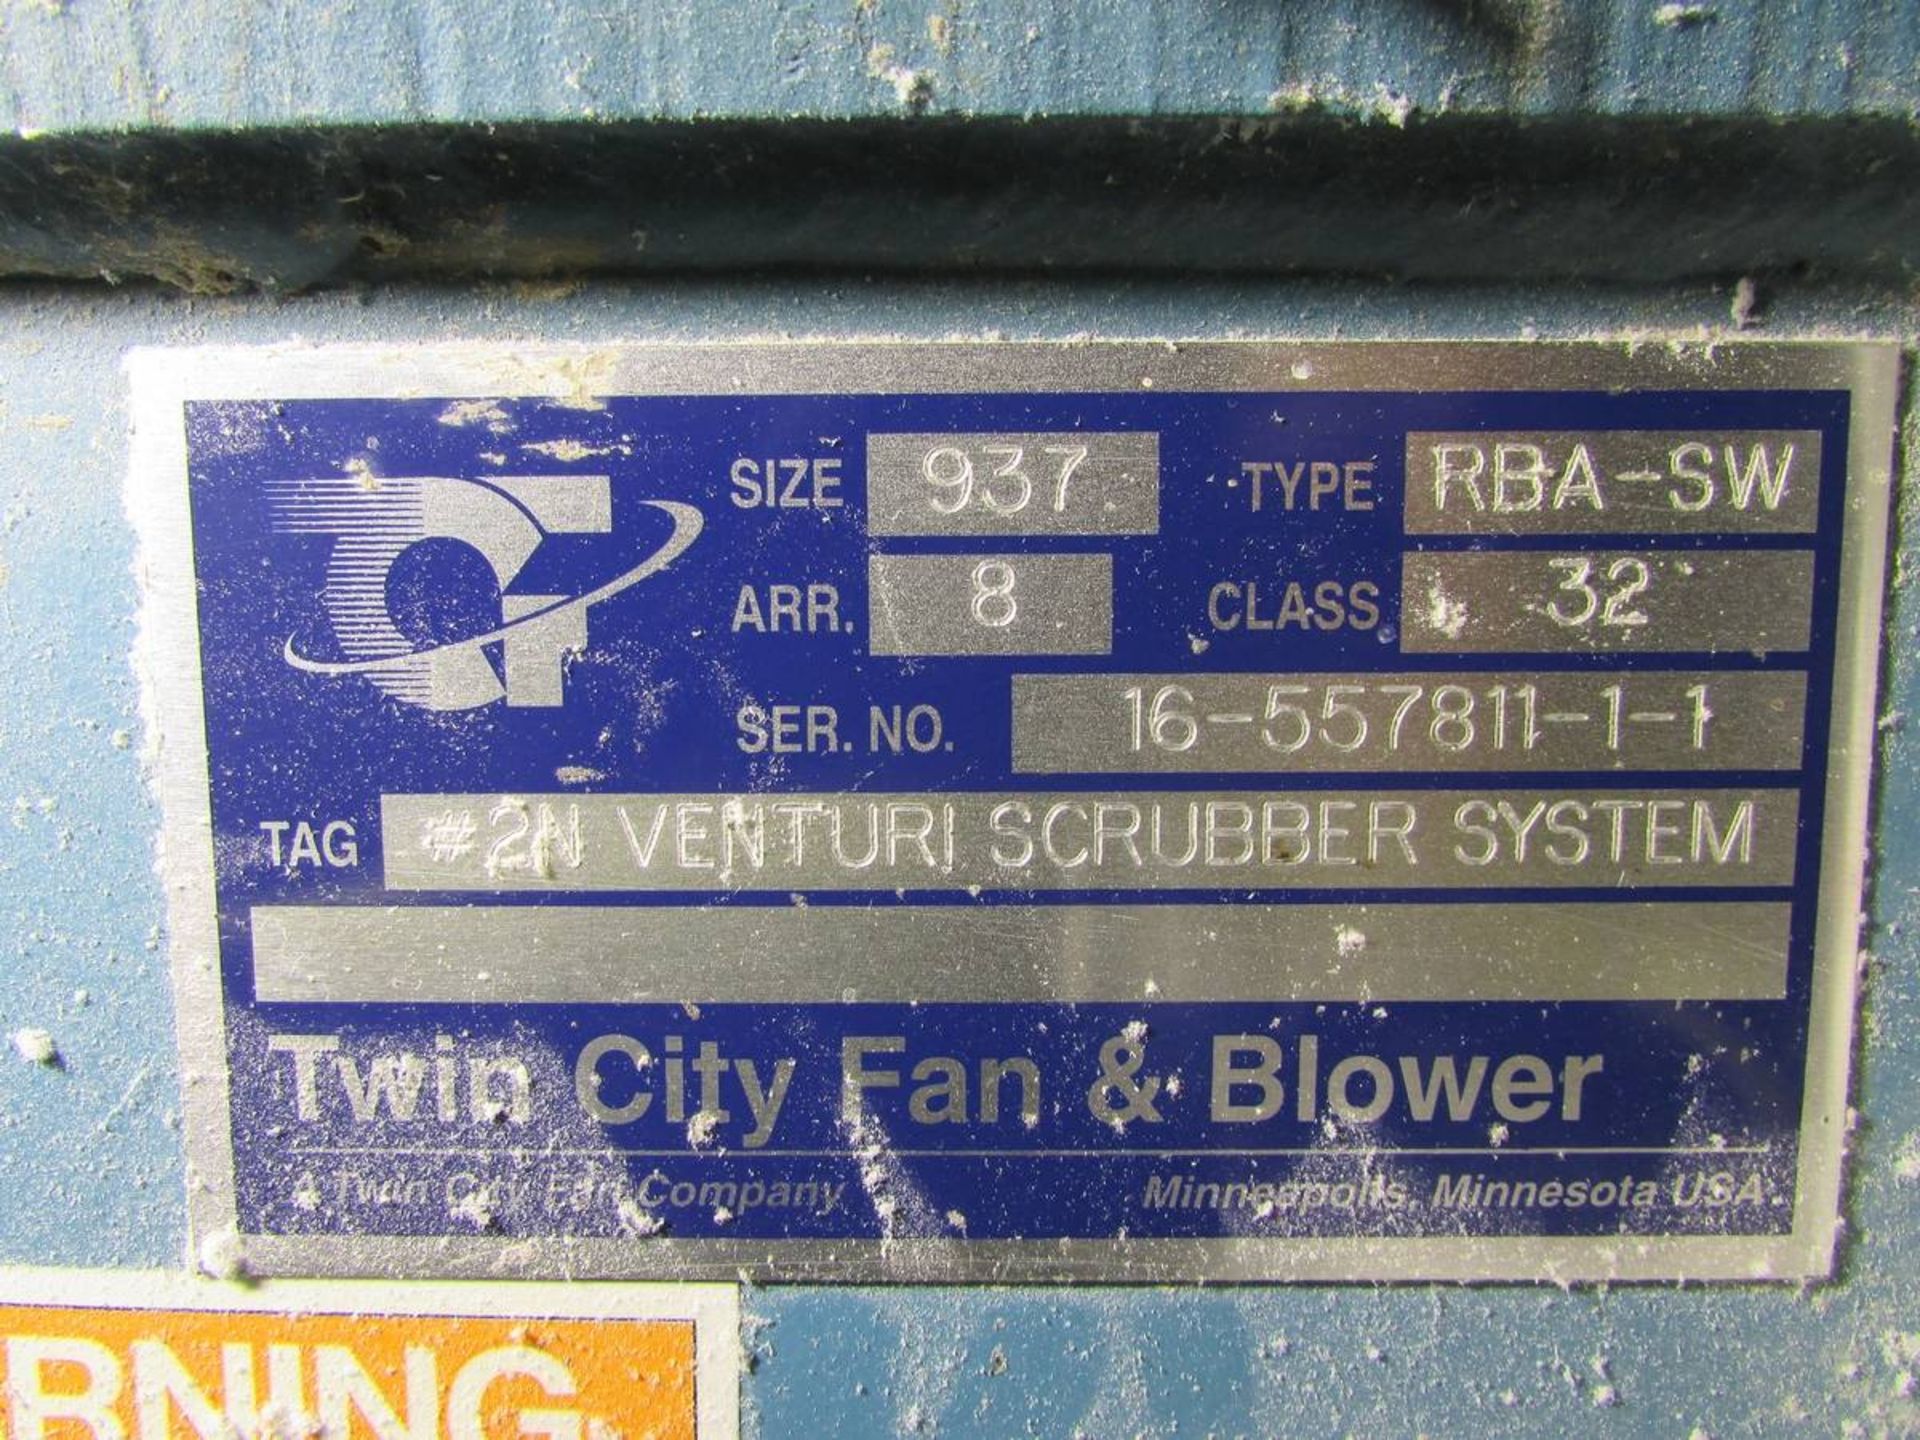 Twin City Fan & Blower RBA-SW No. 2 Venturi Scrubber System Blower - Image 5 of 6